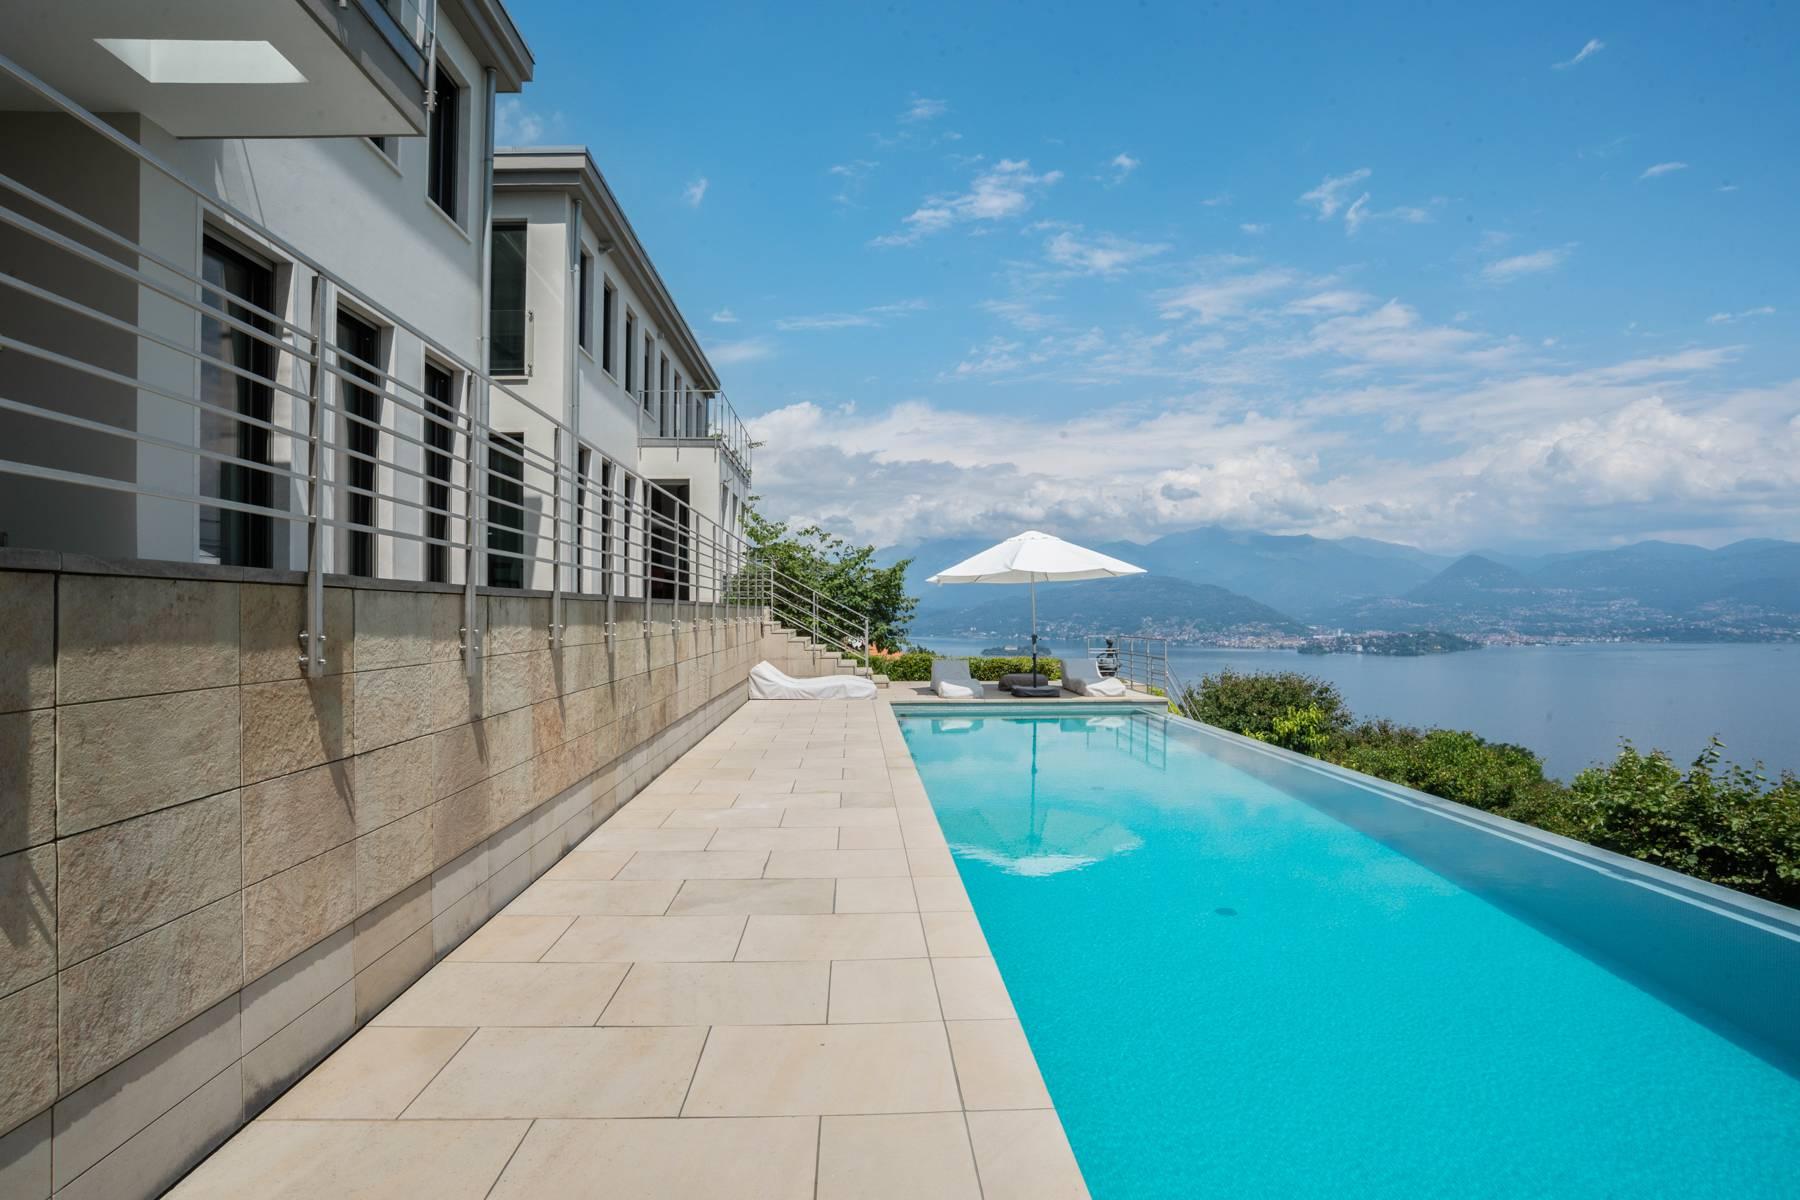 Fabulous Villa on the hills of Stresa - 3